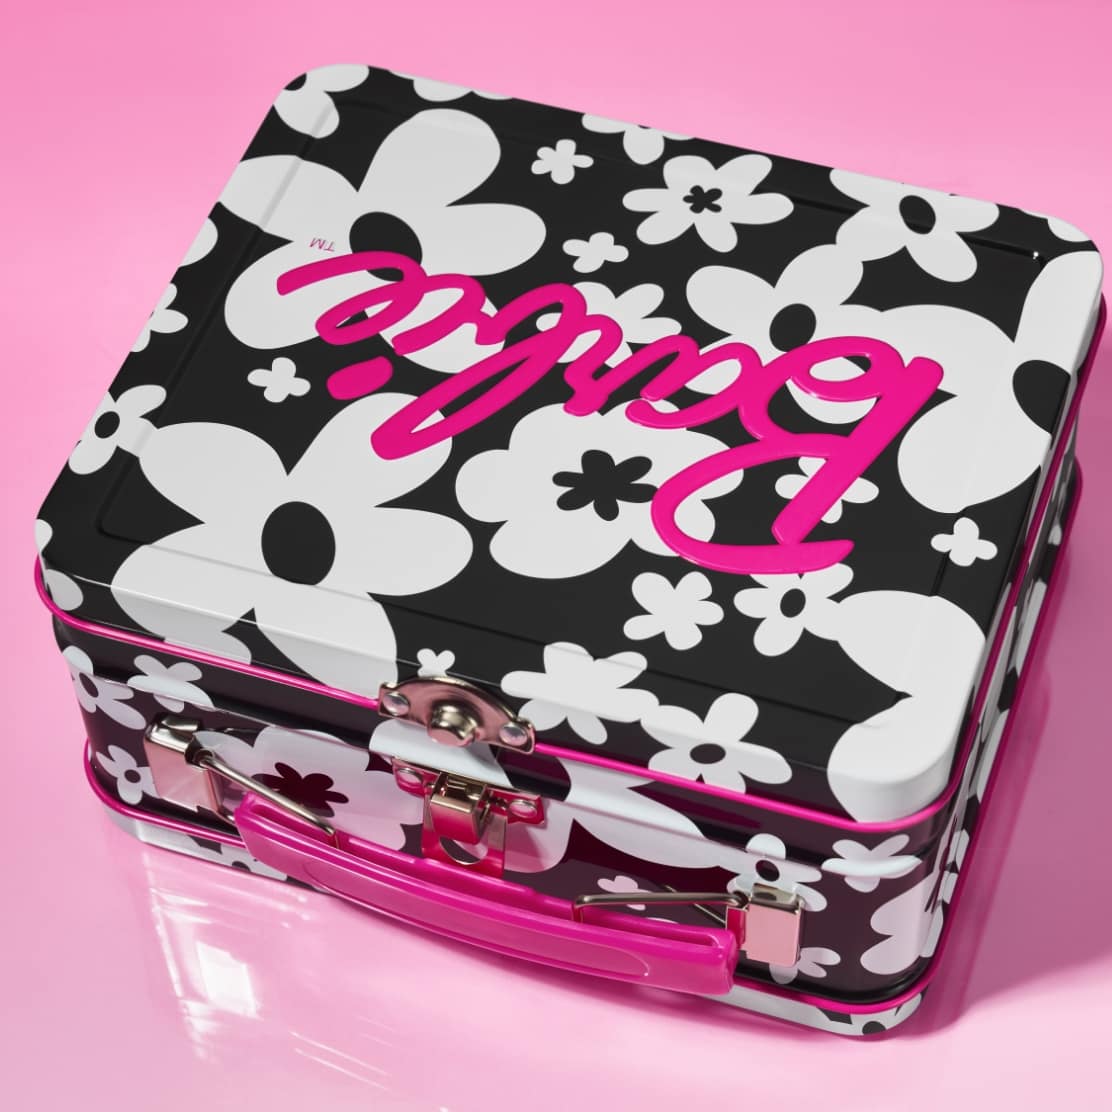 Immagine uno. Una scatola di latta Barbie ispirata a un portapranzo con una stampa floreale in bianco e nero e dettagli rosa shocking.